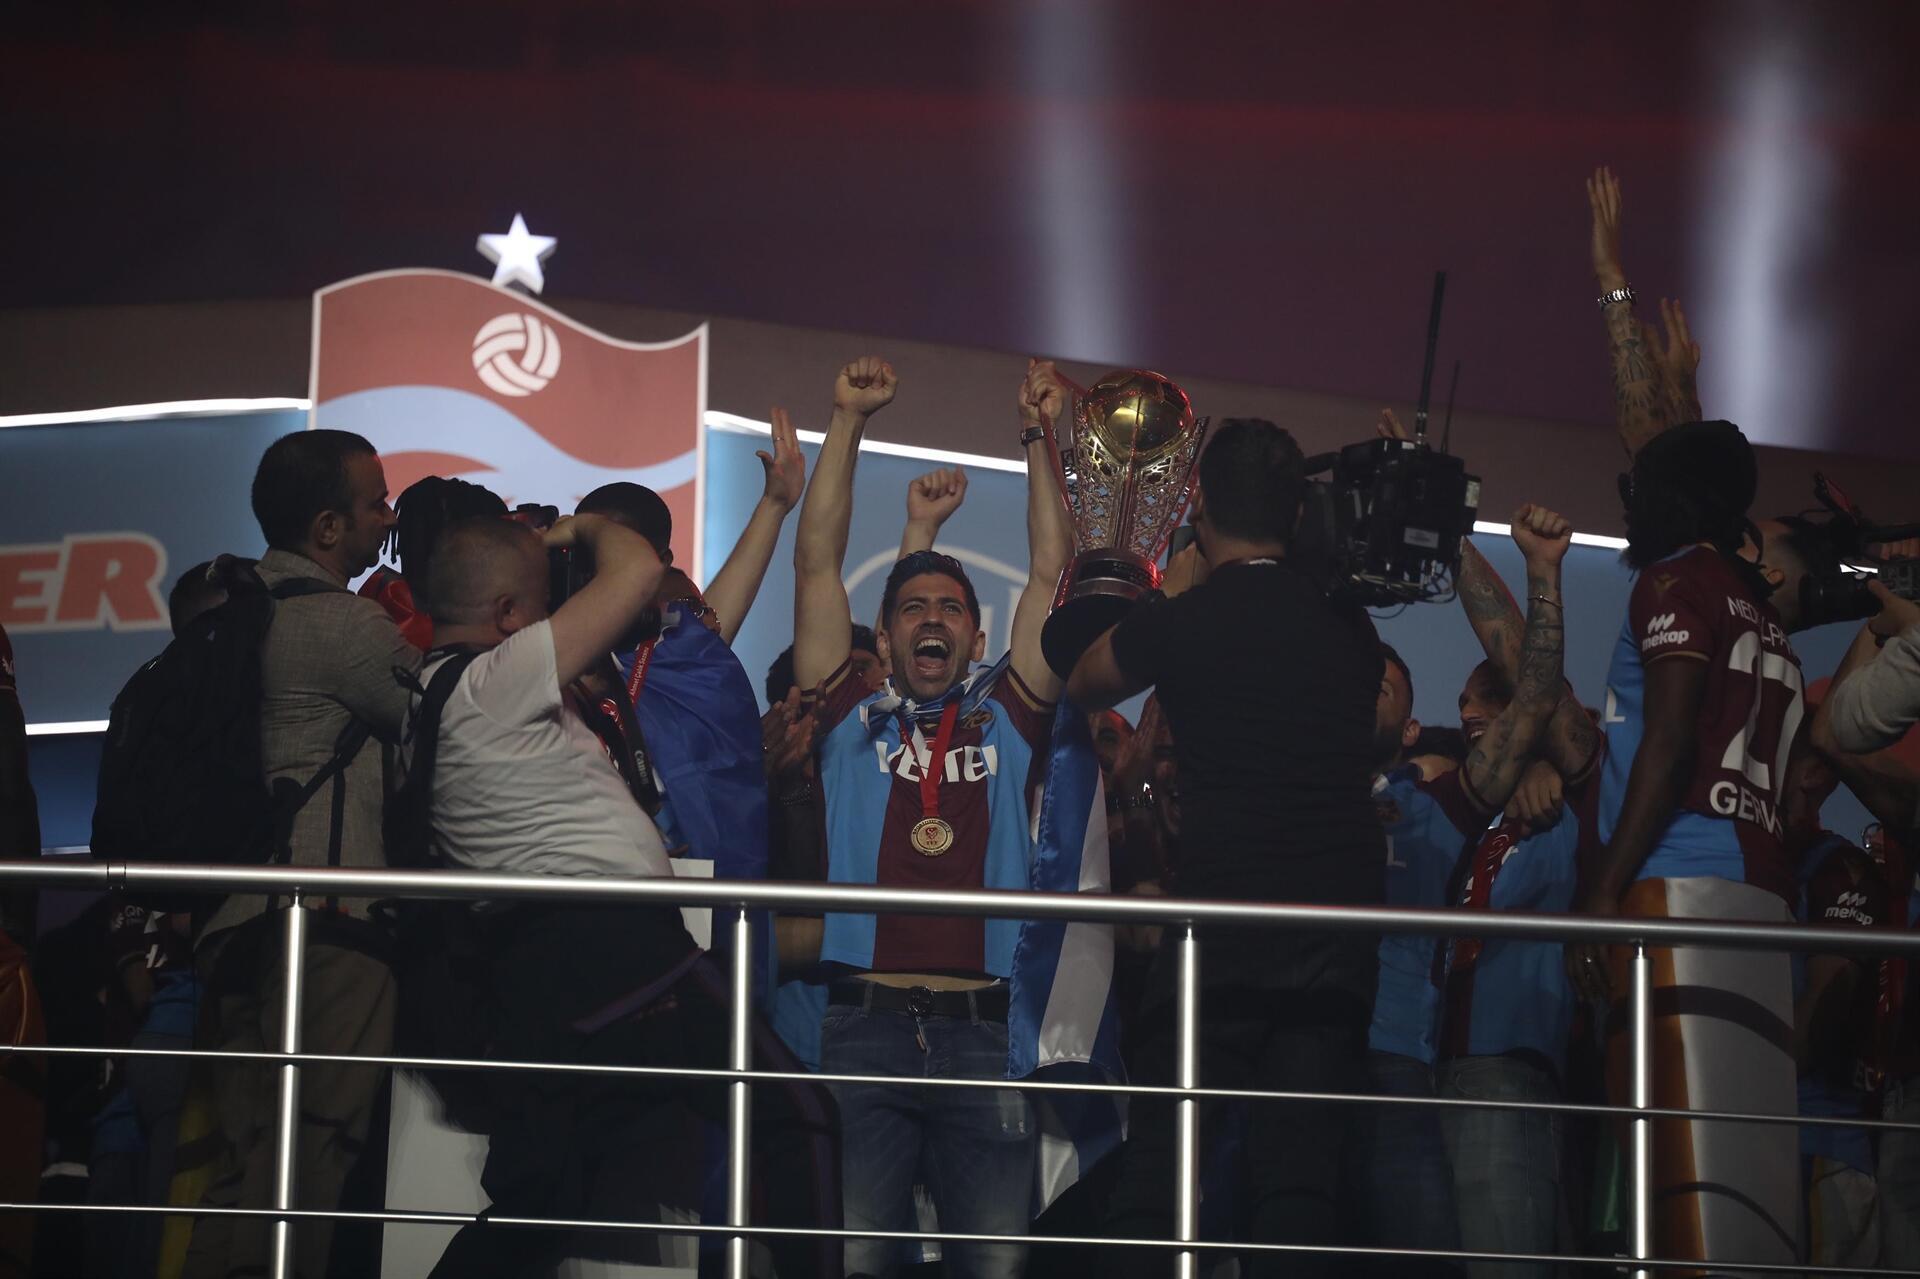 Trabzonsporun şampiyonluk kutlamasından fotoğraflar